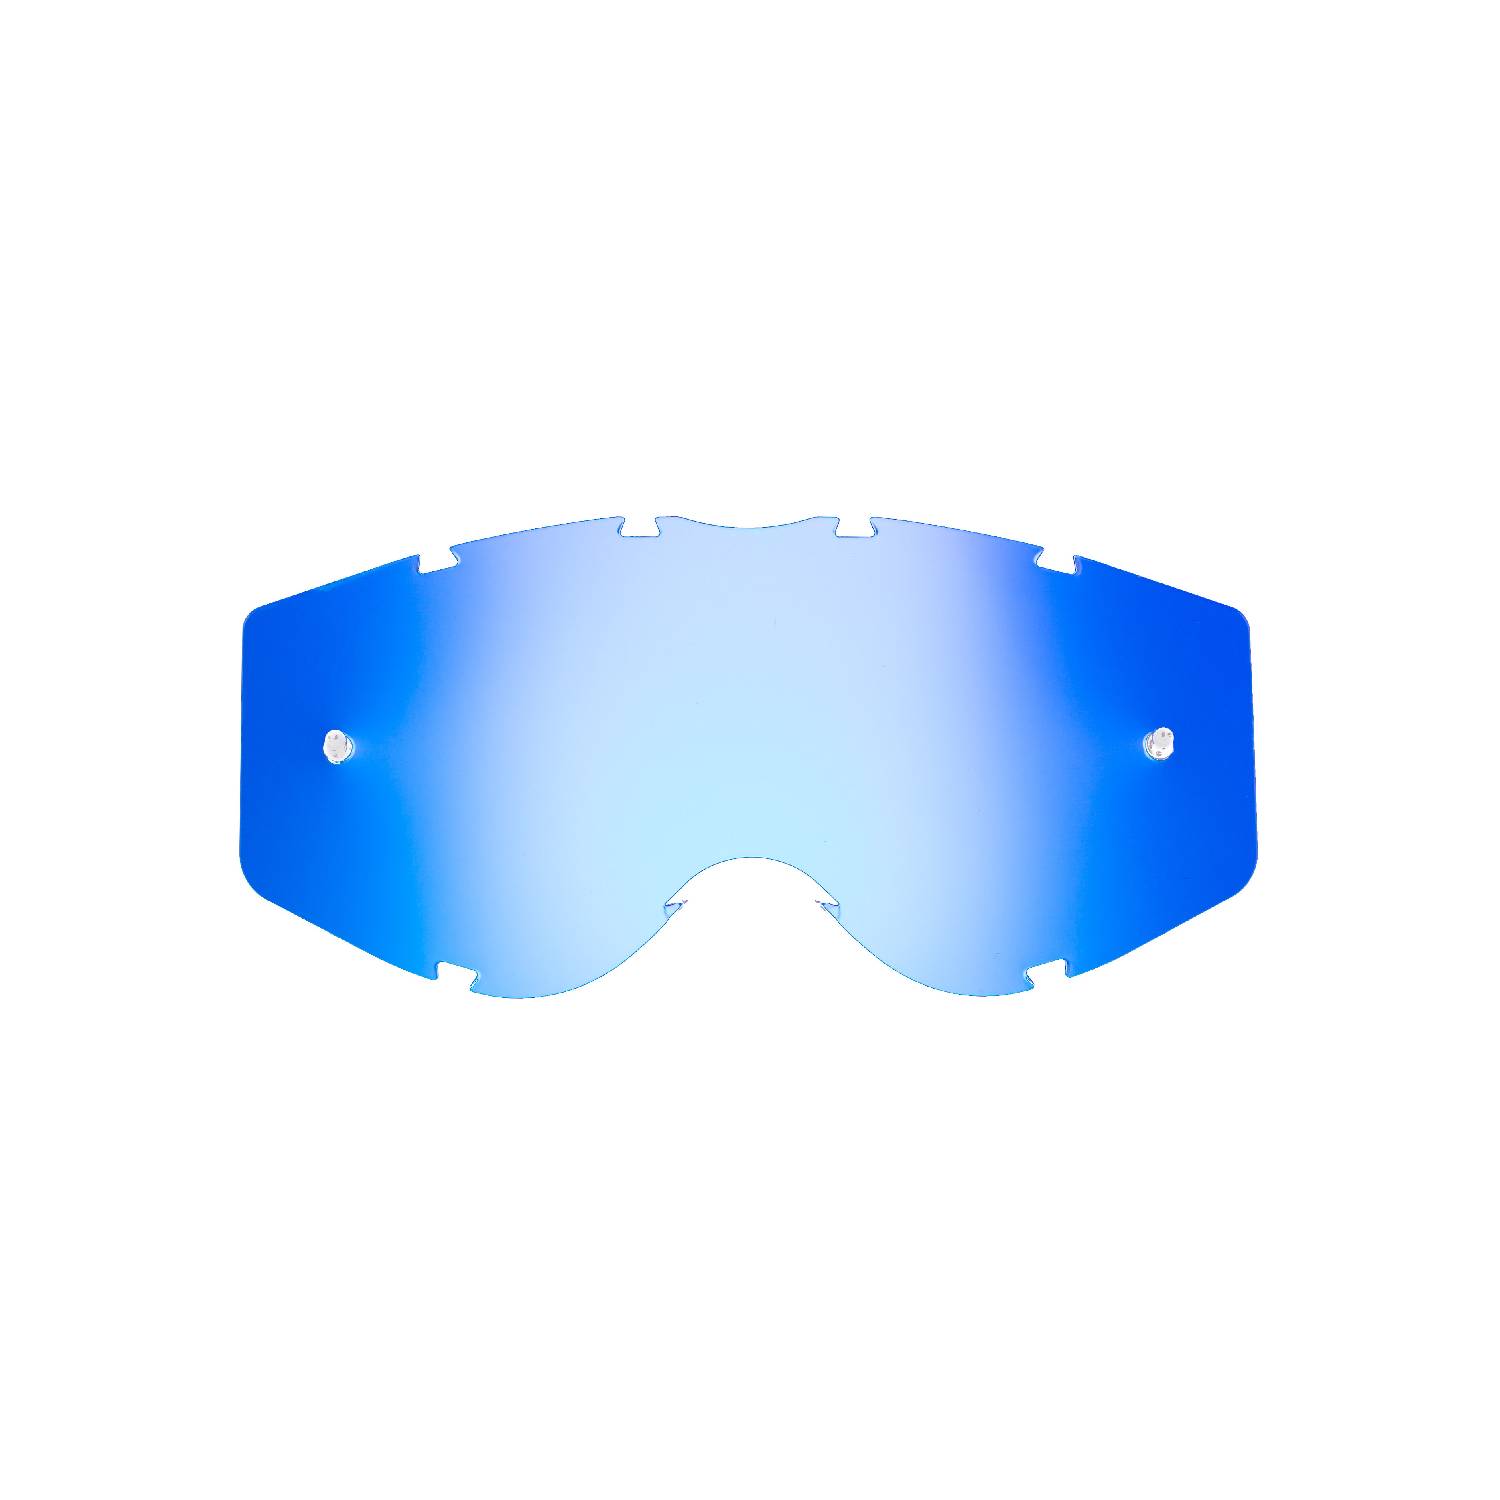 Lente di ricambio blu specchiato compatibile per occhiale/maschera Progrip 3303 Vista